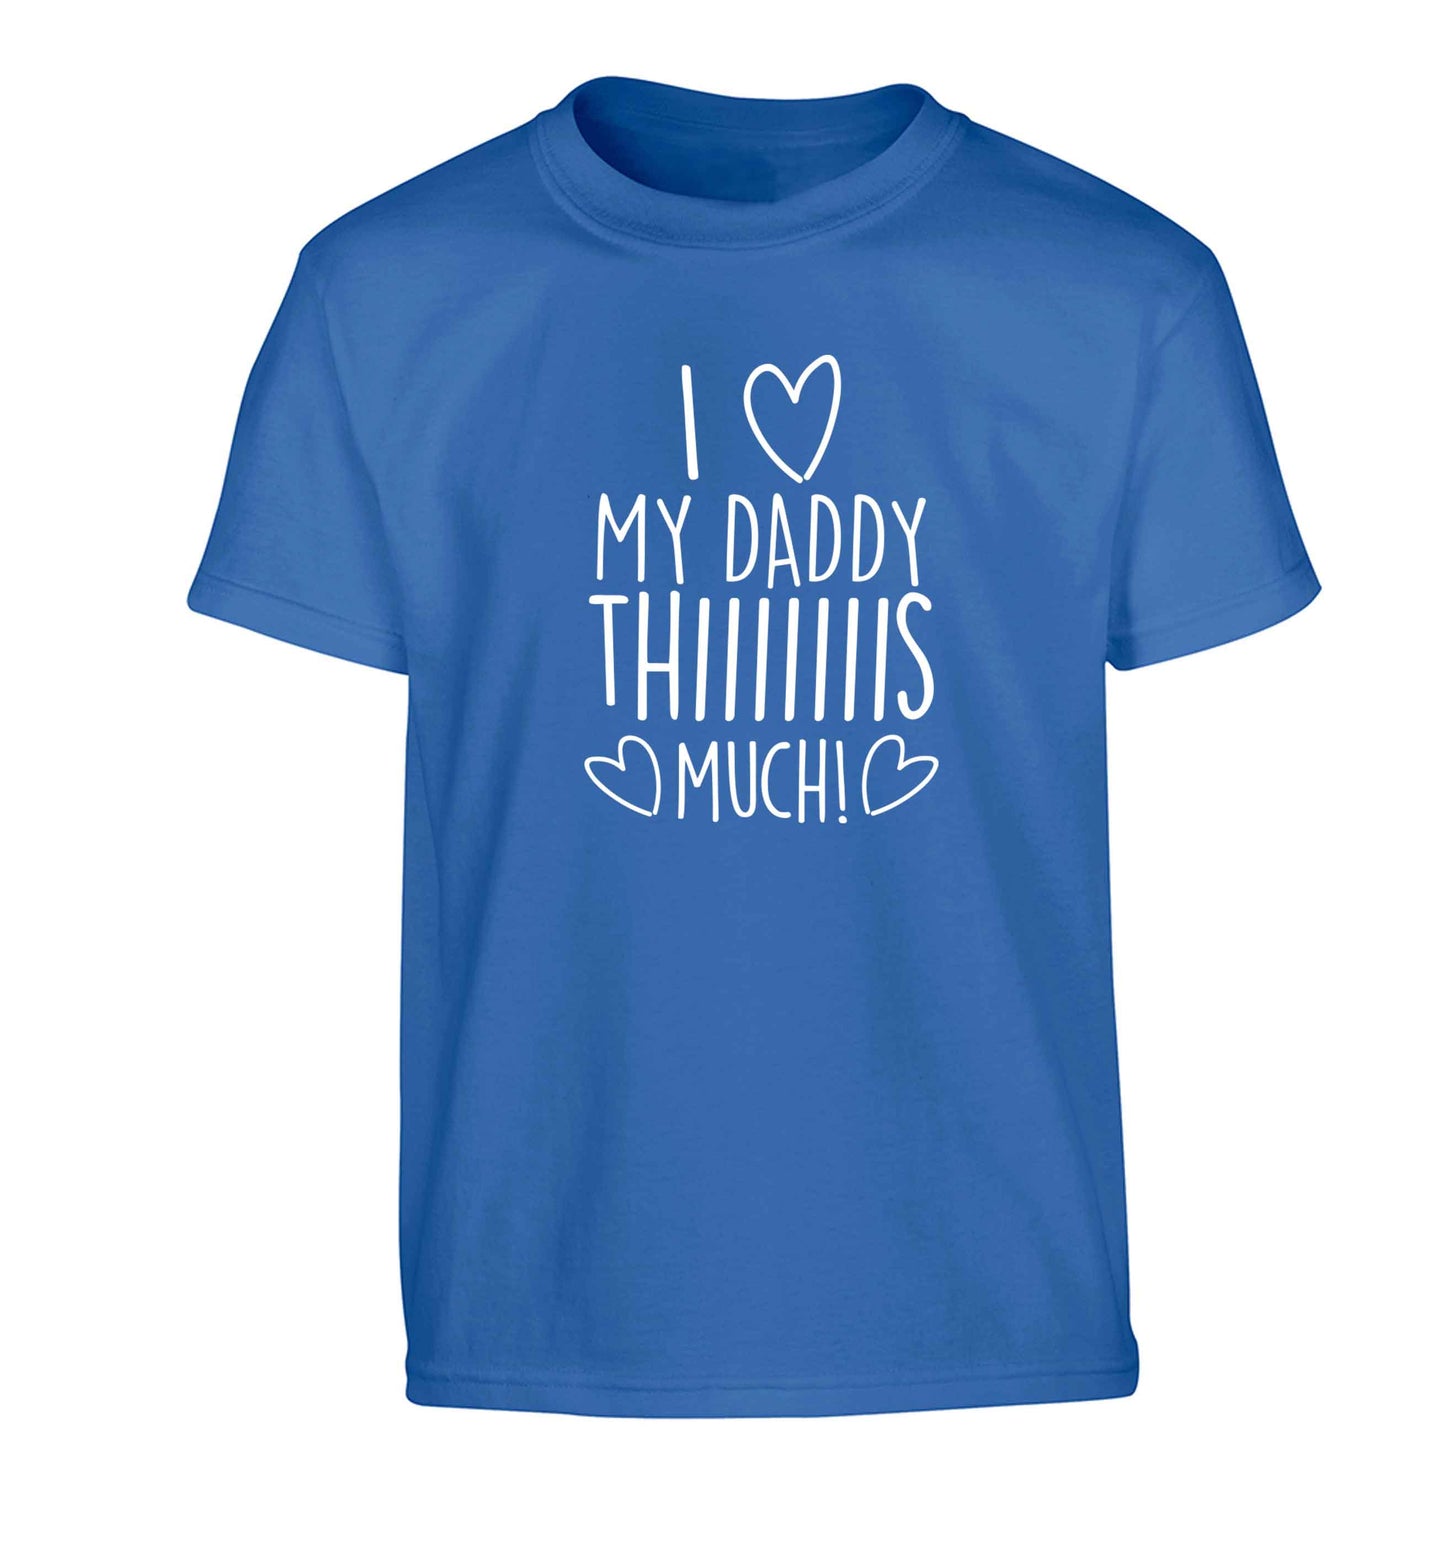 I love my daddy thiiiiis much! Children's blue Tshirt 12-13 Years